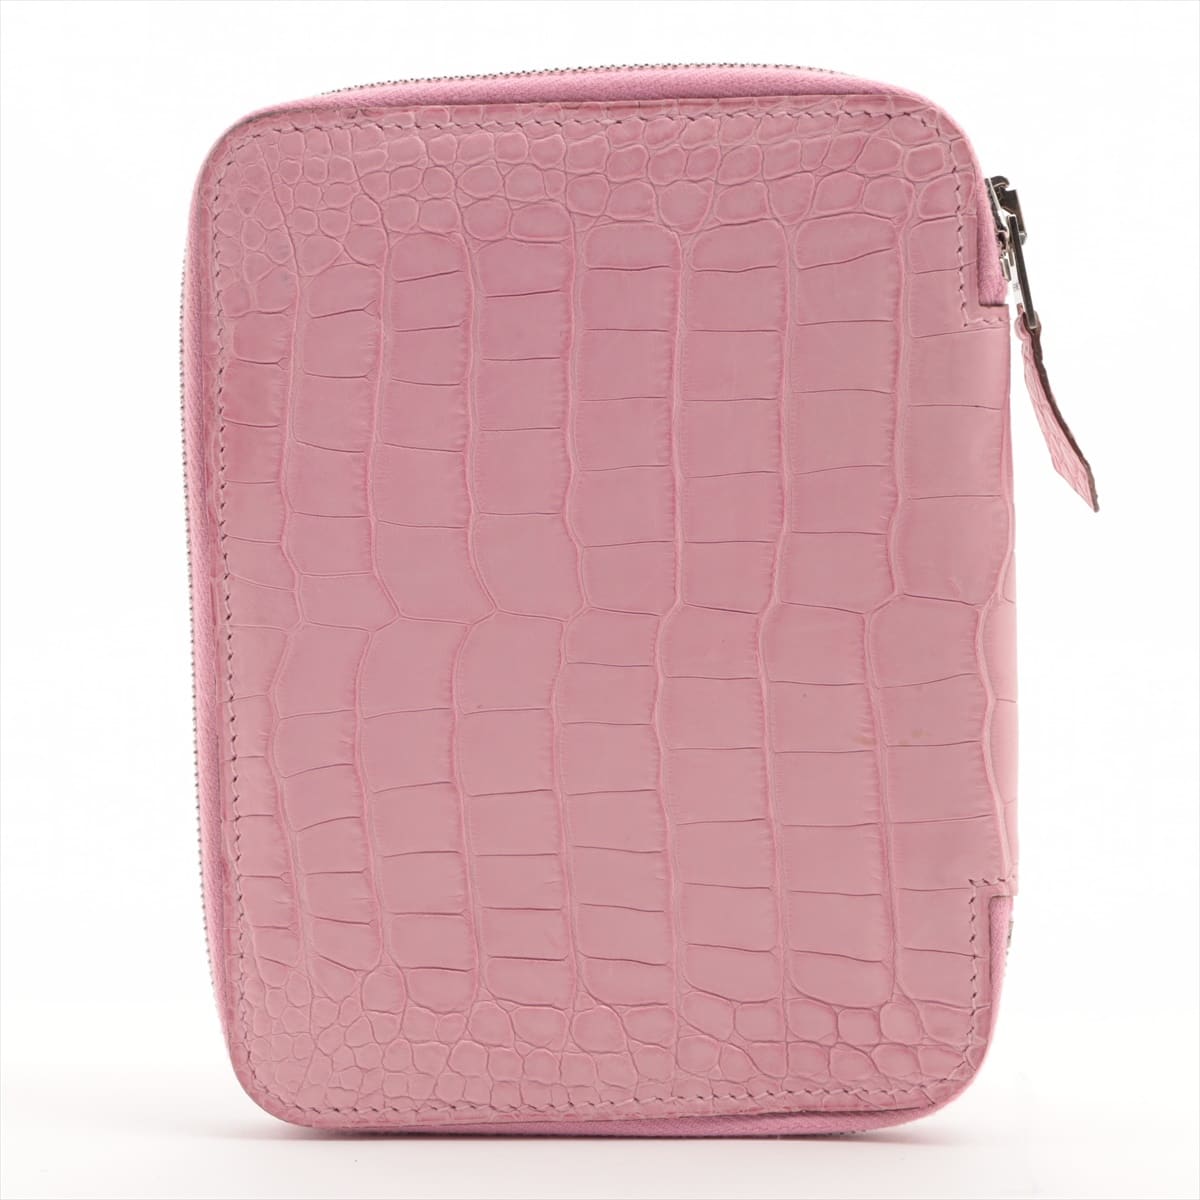 Hermès Agenda Alligator Notebook cover Pink Silver Metal fittings □N:2010 Round zip